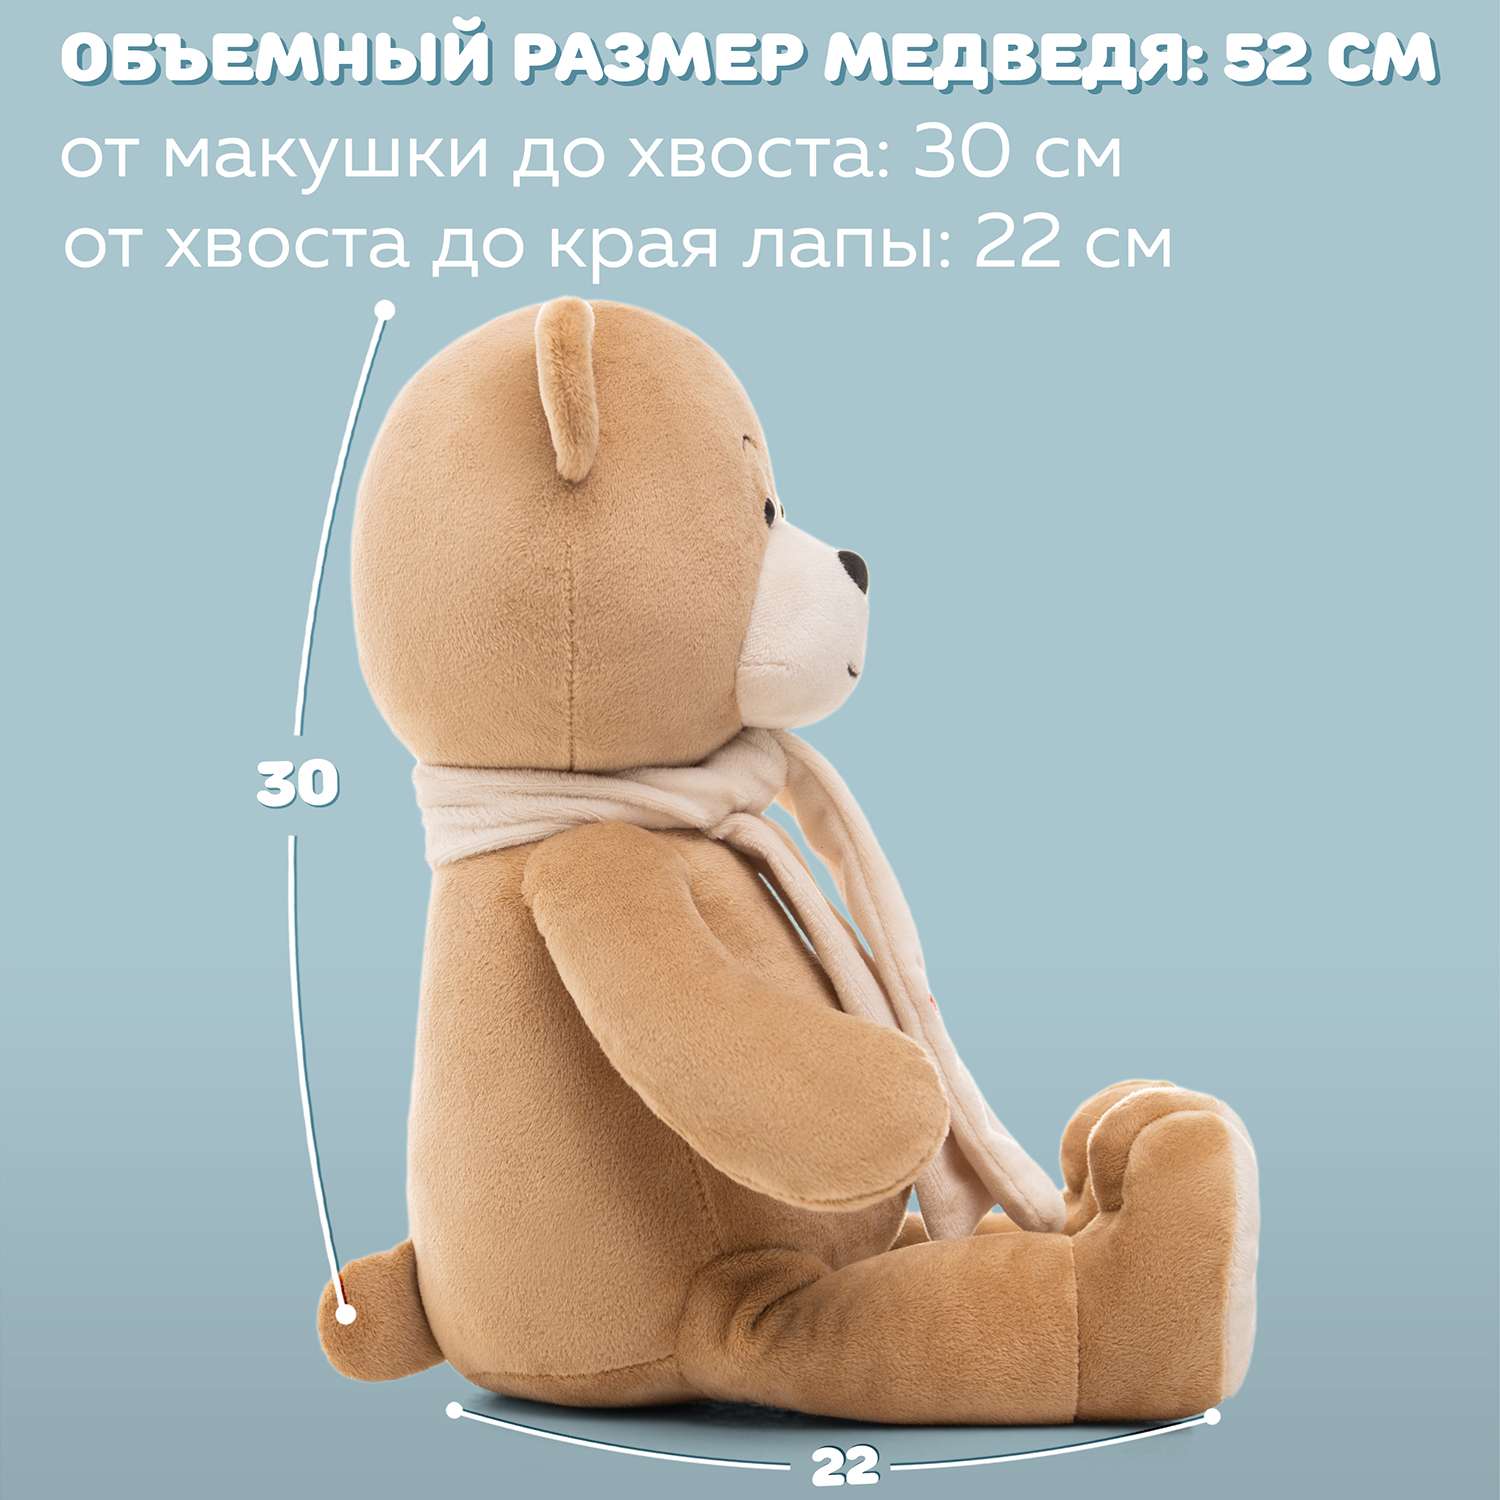 Медведь Мягкие игрушки БелайТойс Боня кофейный - фото 4